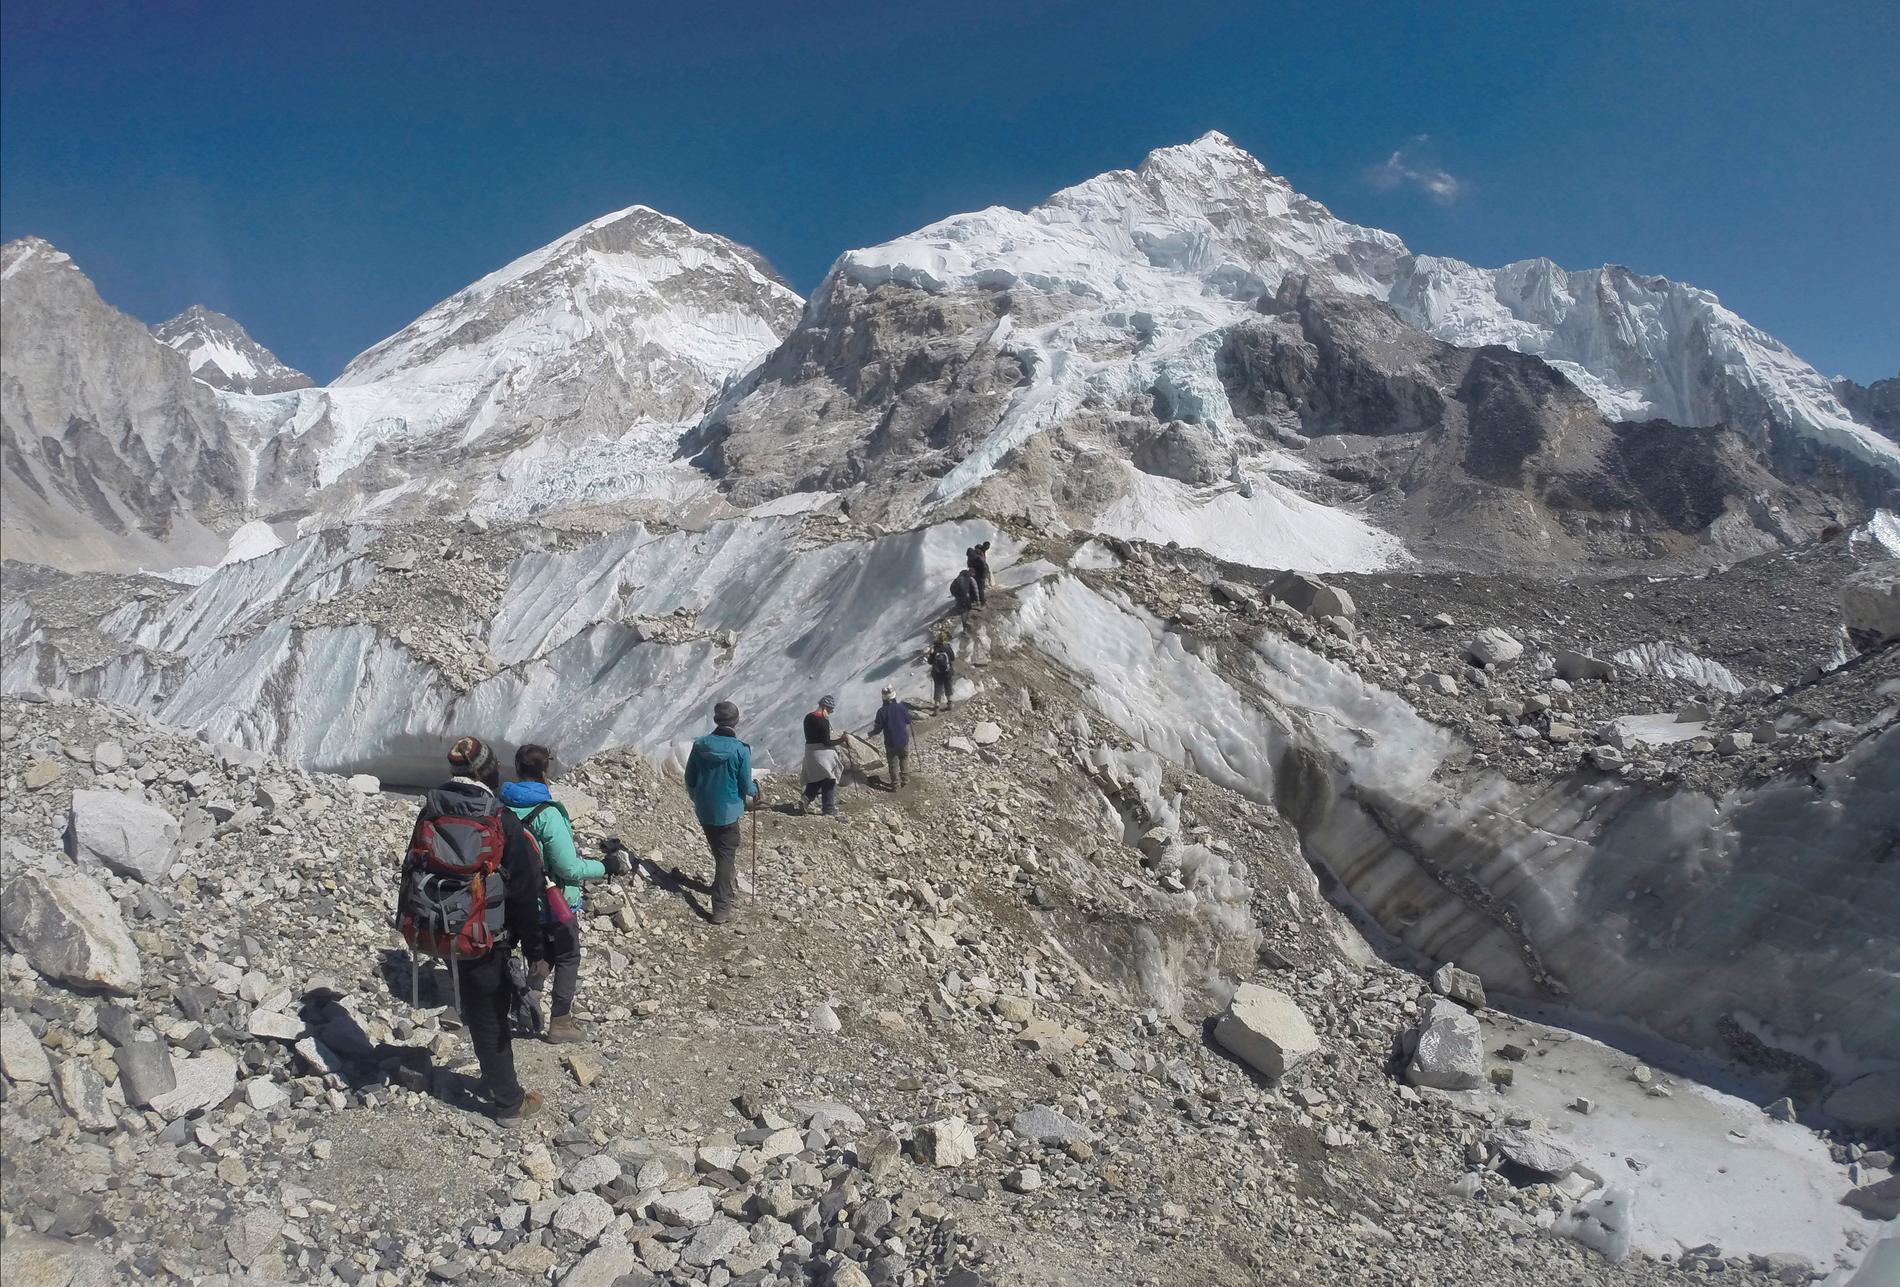 Sju personer har omkommit på Mount Everest under den senaste veckan. Arkivbild.